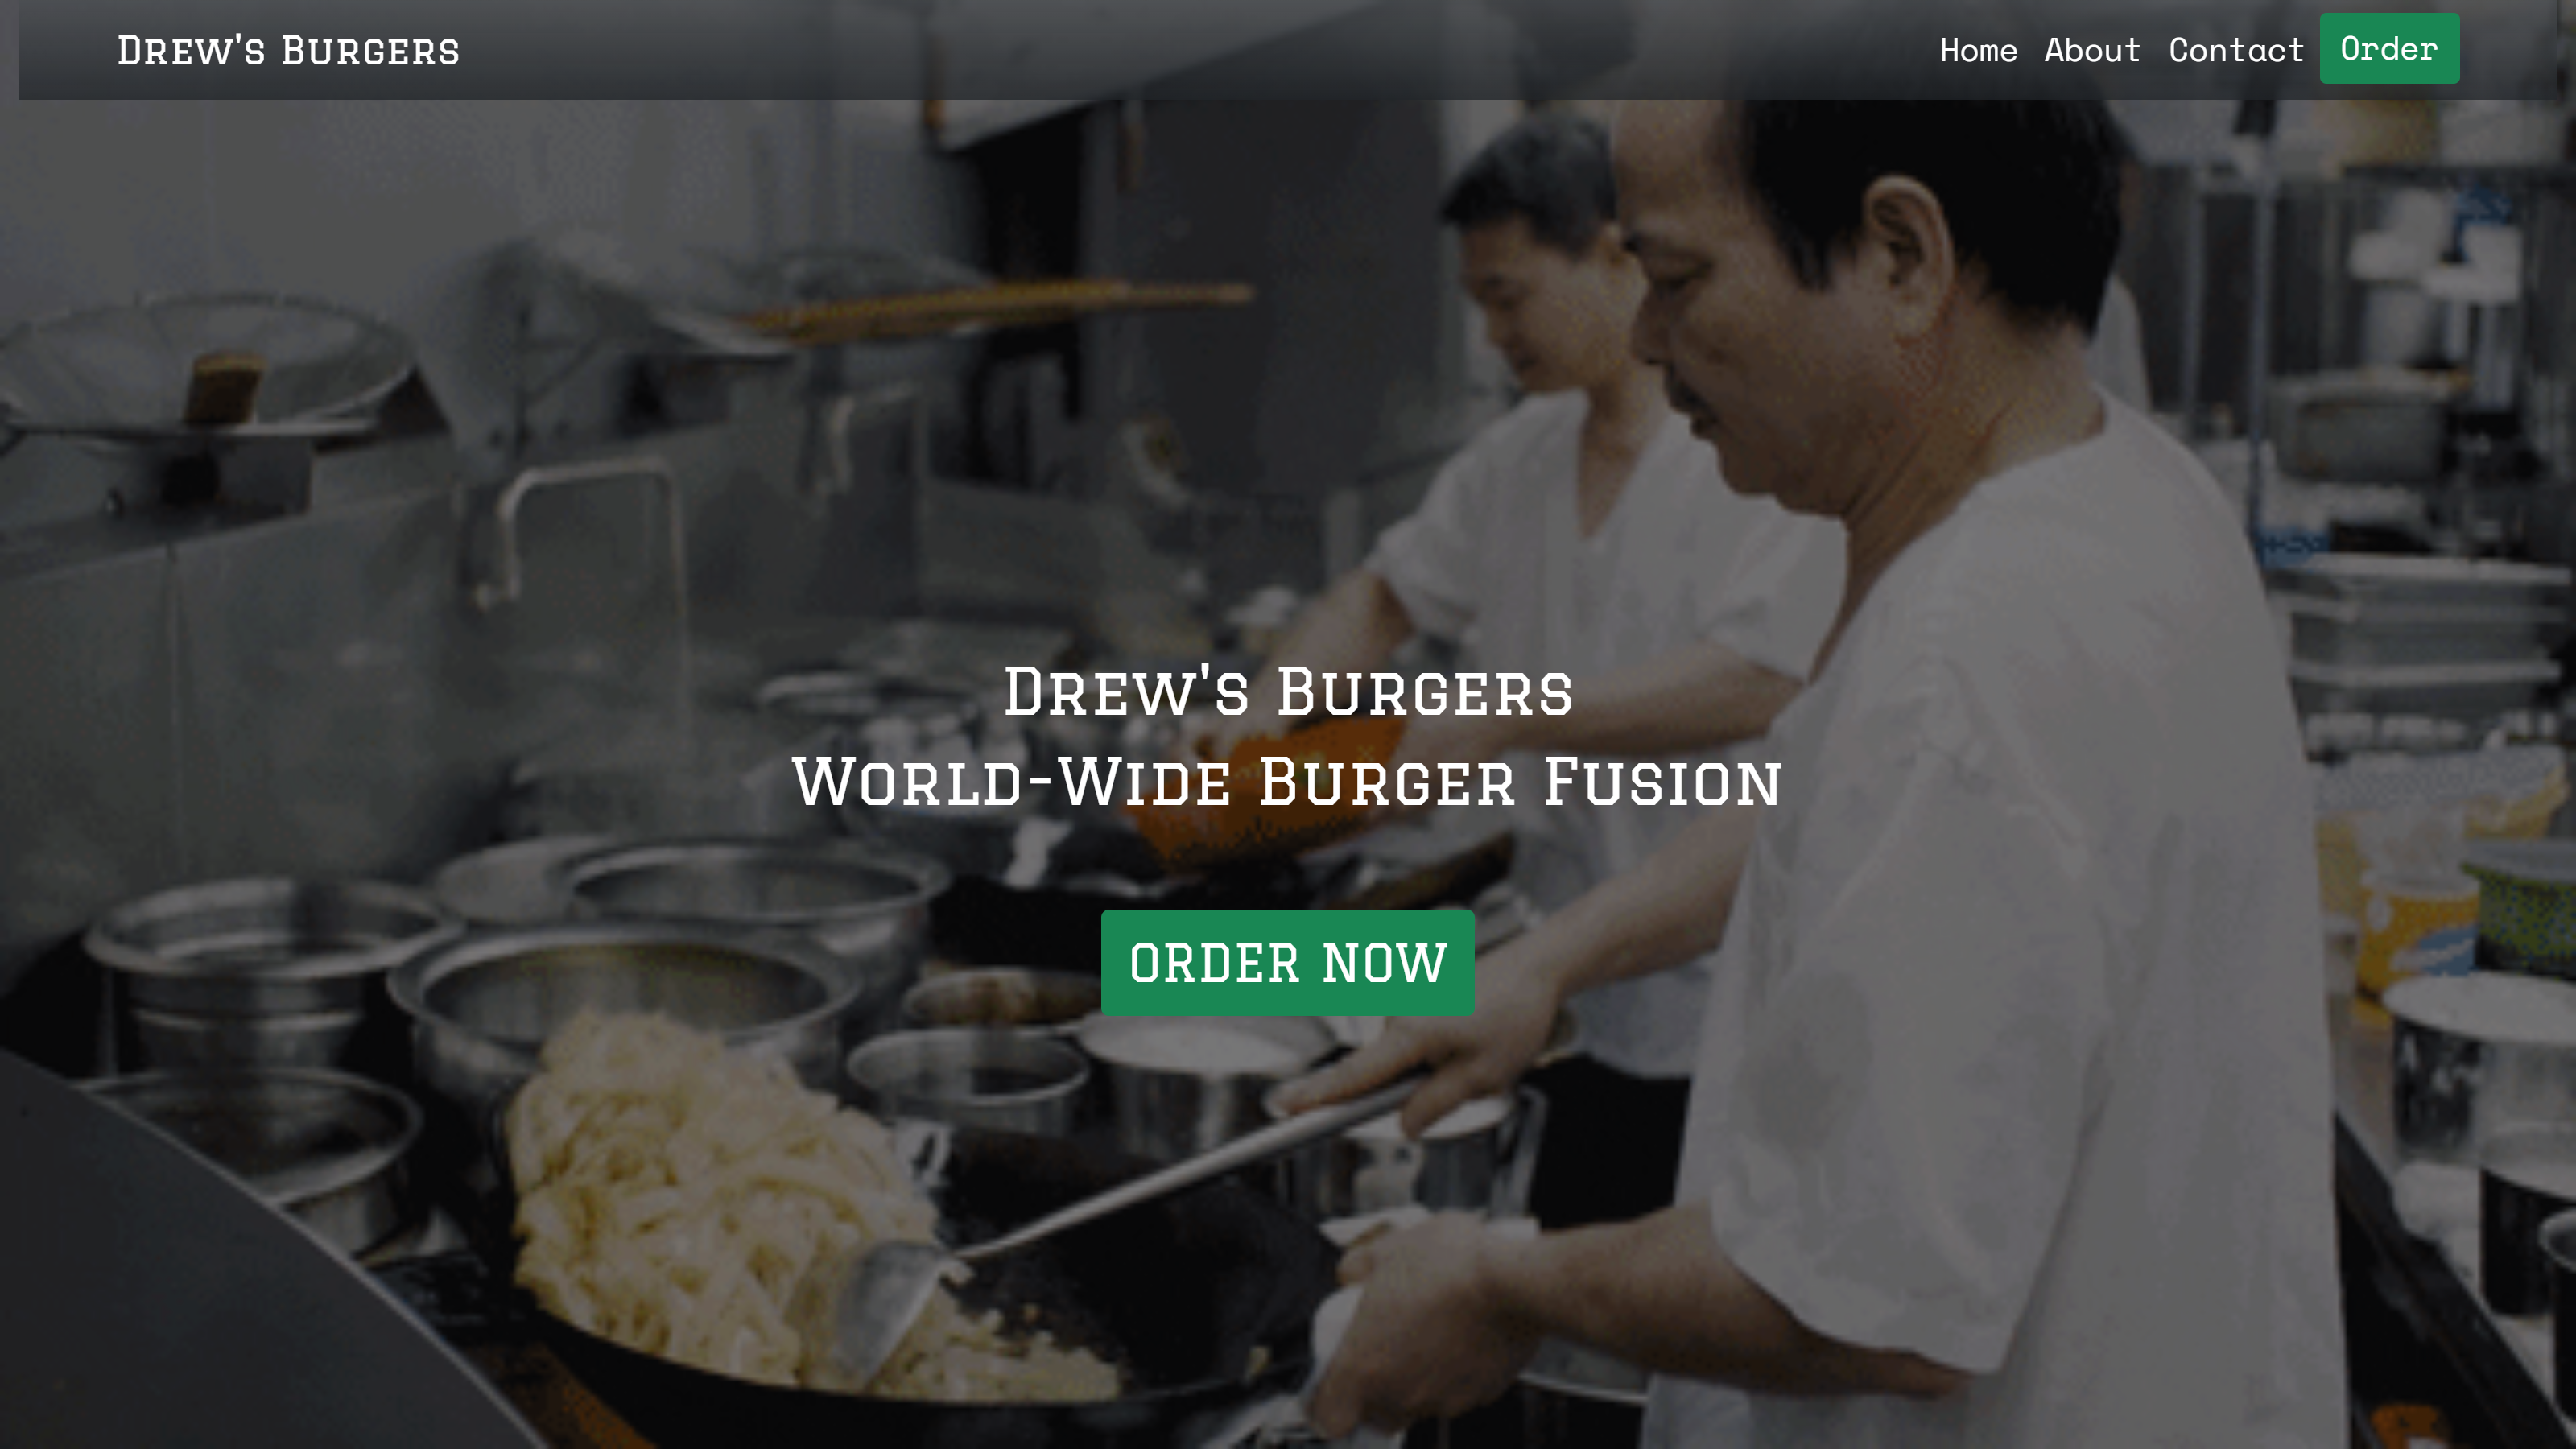 Burger mockup site desktop view